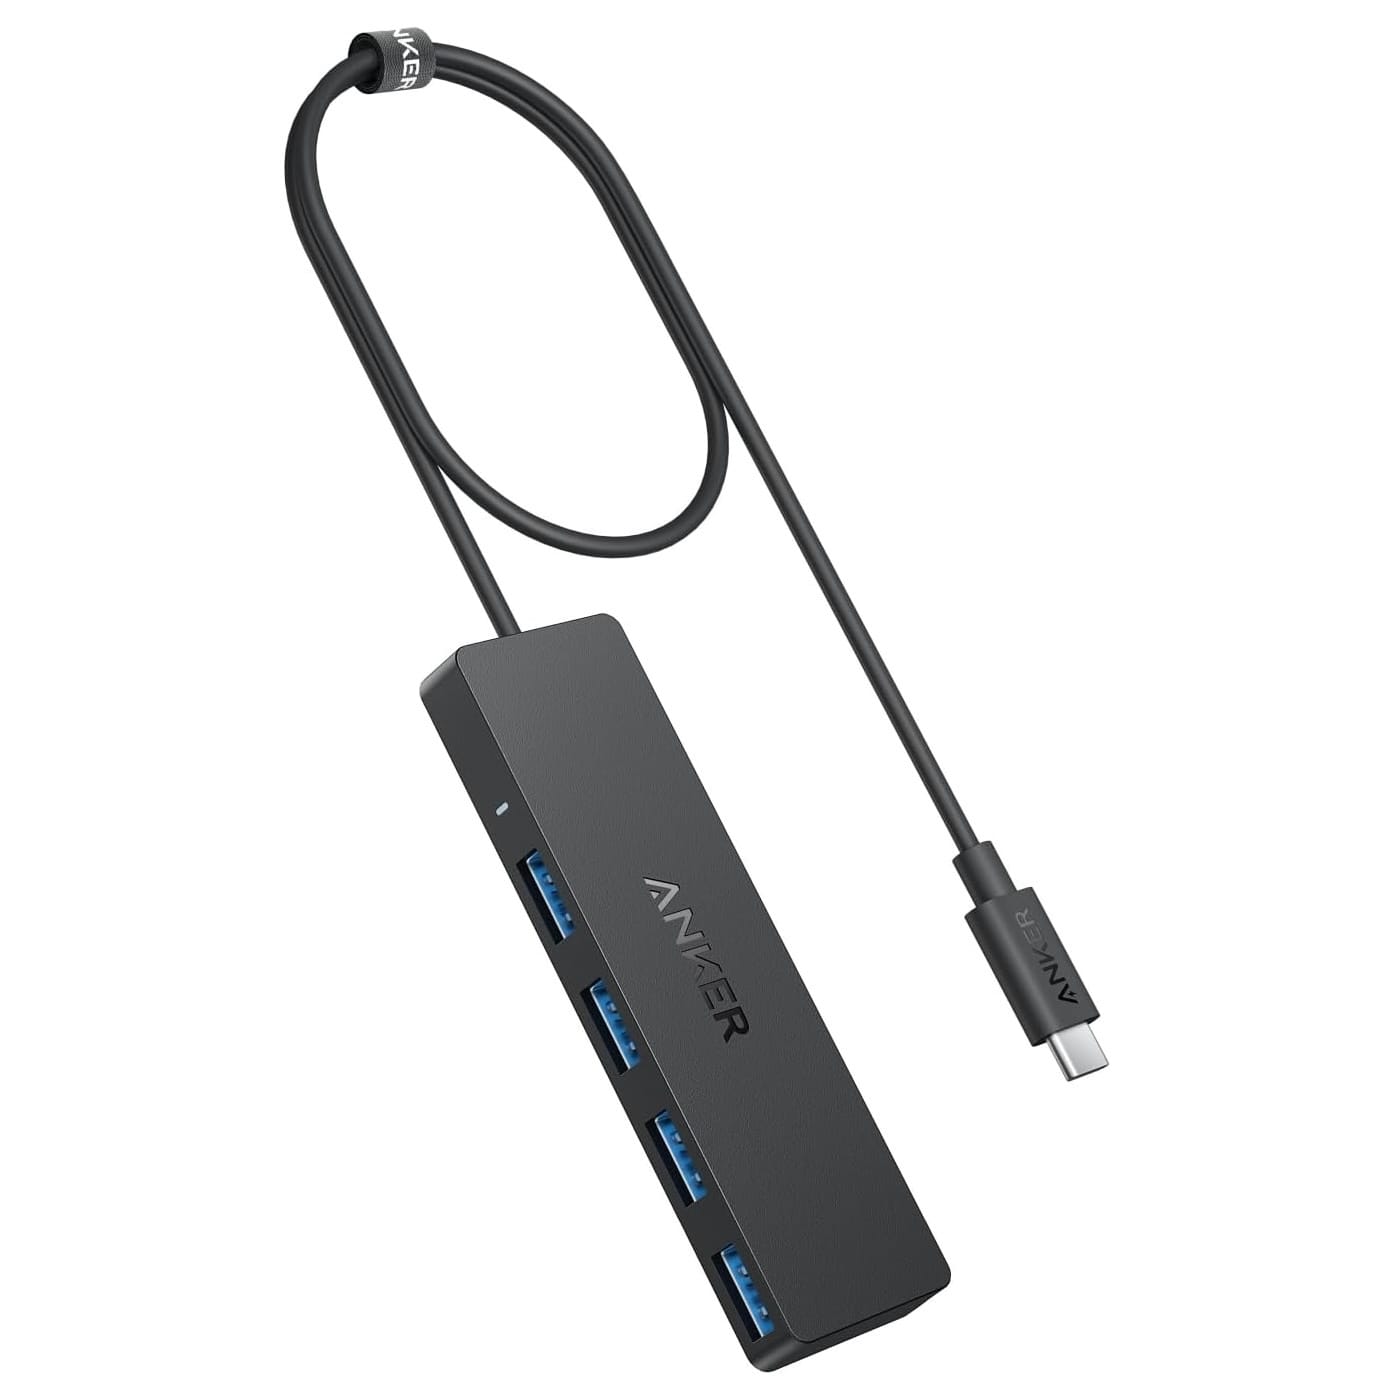 Anker、USB-C接続の4ポートUSB 3.0ハブ発売